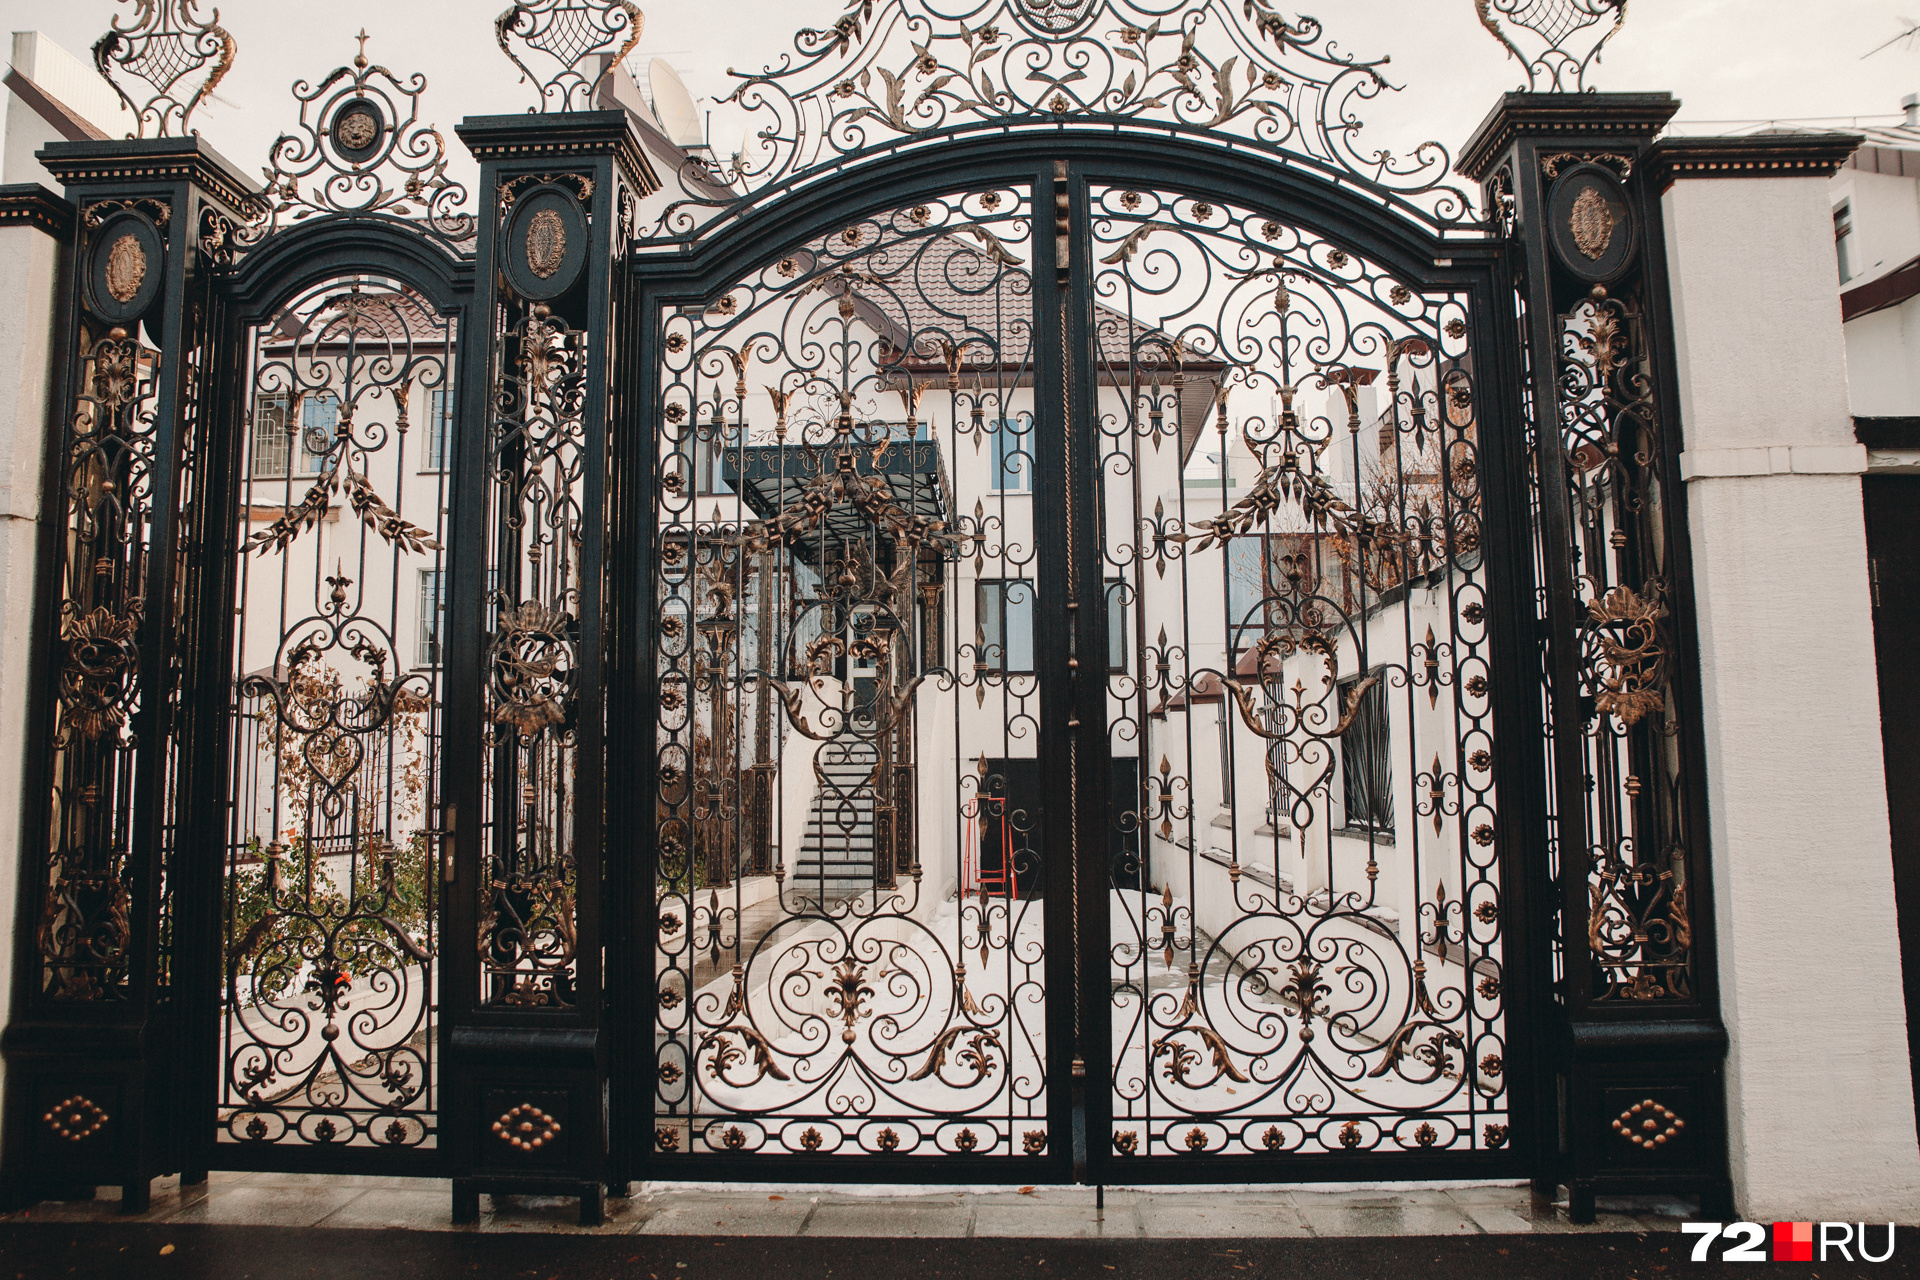 Забор, у которого тюменцы обожают фотографироваться. И это неудивительно: эти ажурные ворота с миллионом изящных деталей — настоящее произведение искусства